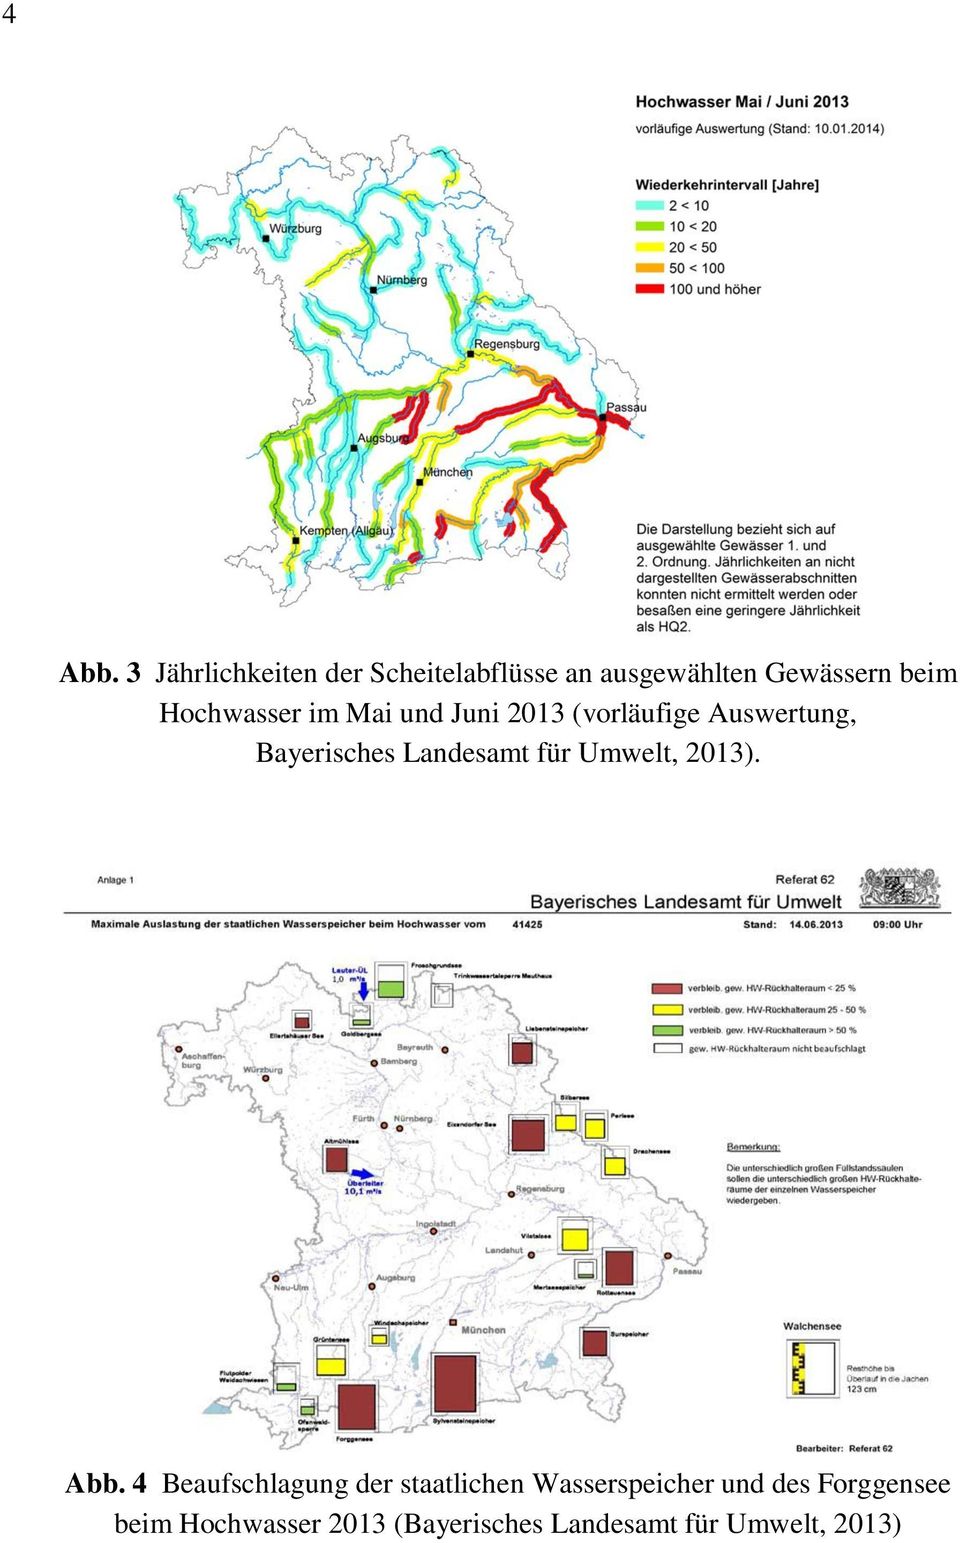 Hochwasser im Mai und Juni 2013 (vorläufige Auswertung, Bayerisches